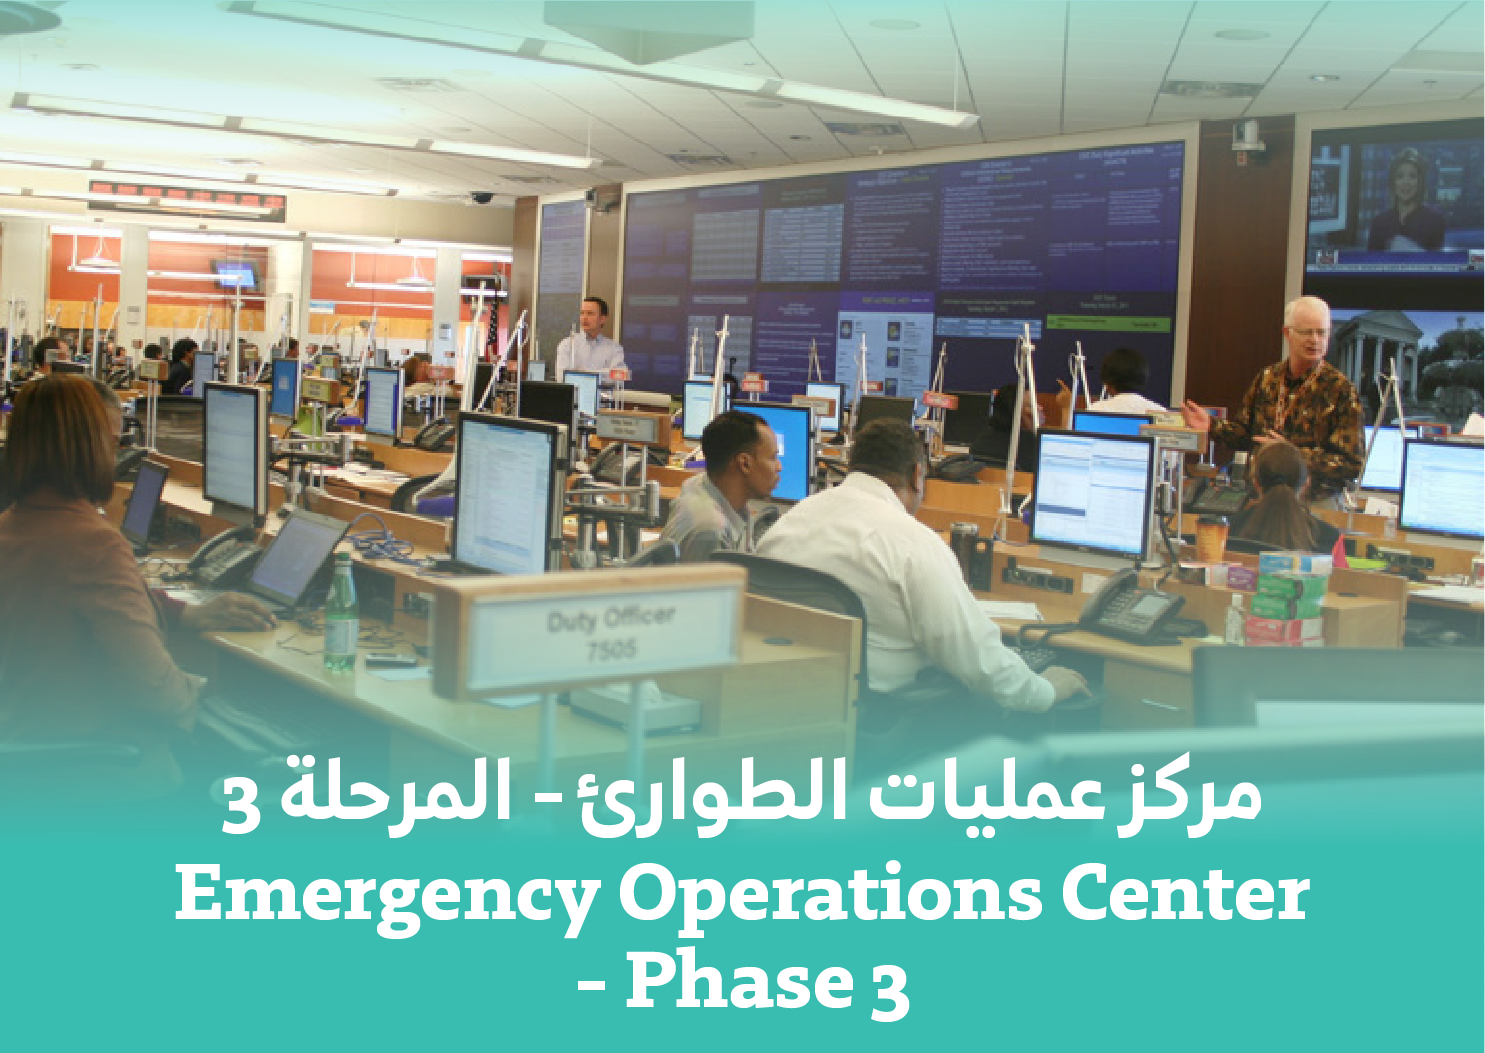 Emergency Operation Center - Phase 3